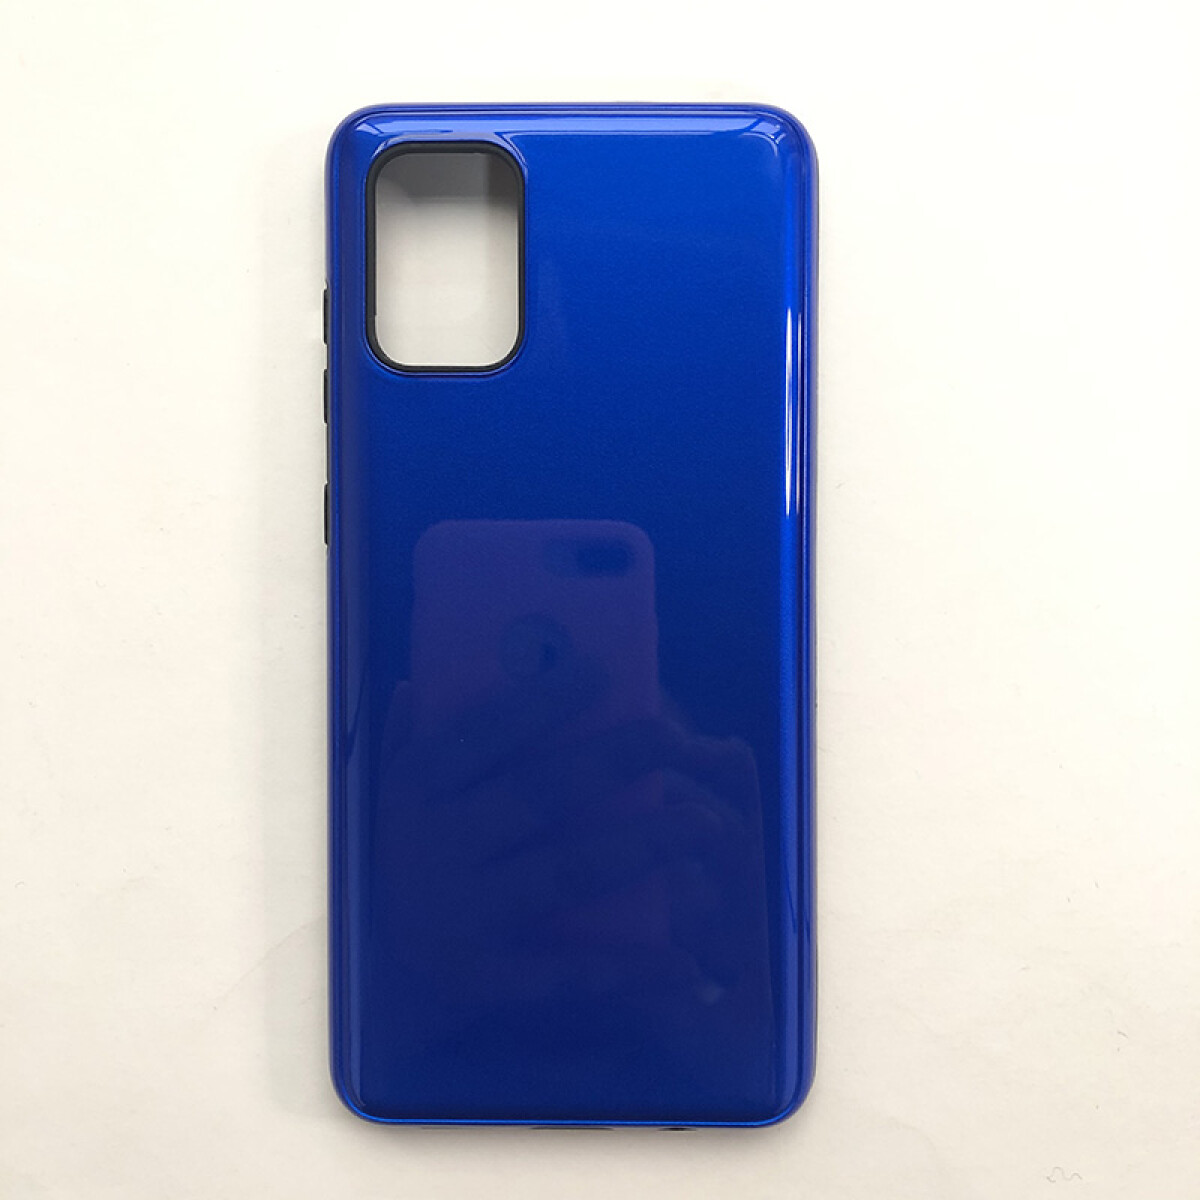 Protector para Samsung A71 azul 